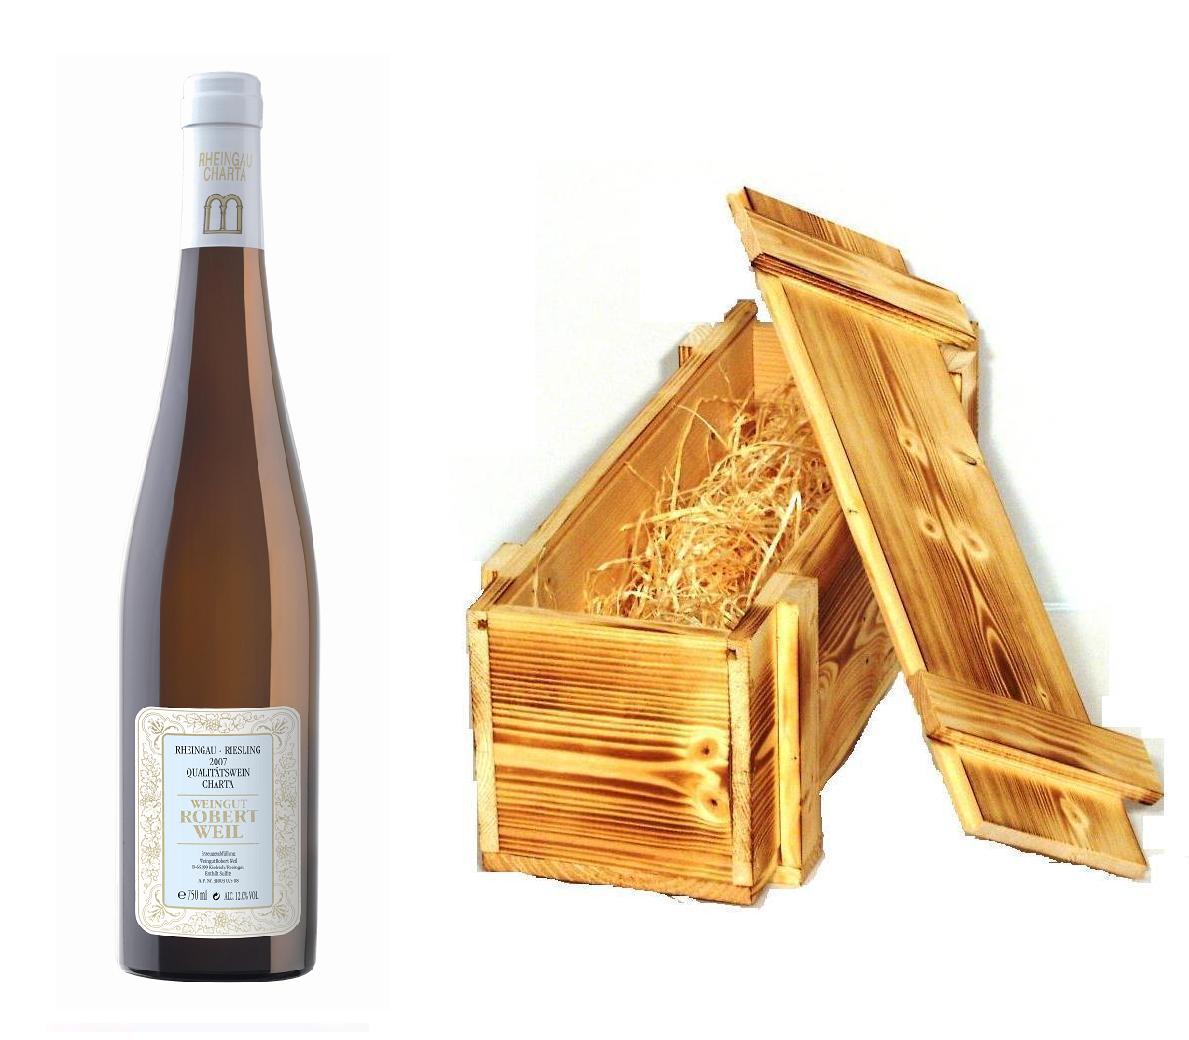 Wein der Marke Robert Weil Riesling Charta Qba trocken 2010 12% 0,75l Flasche in Holzkiste